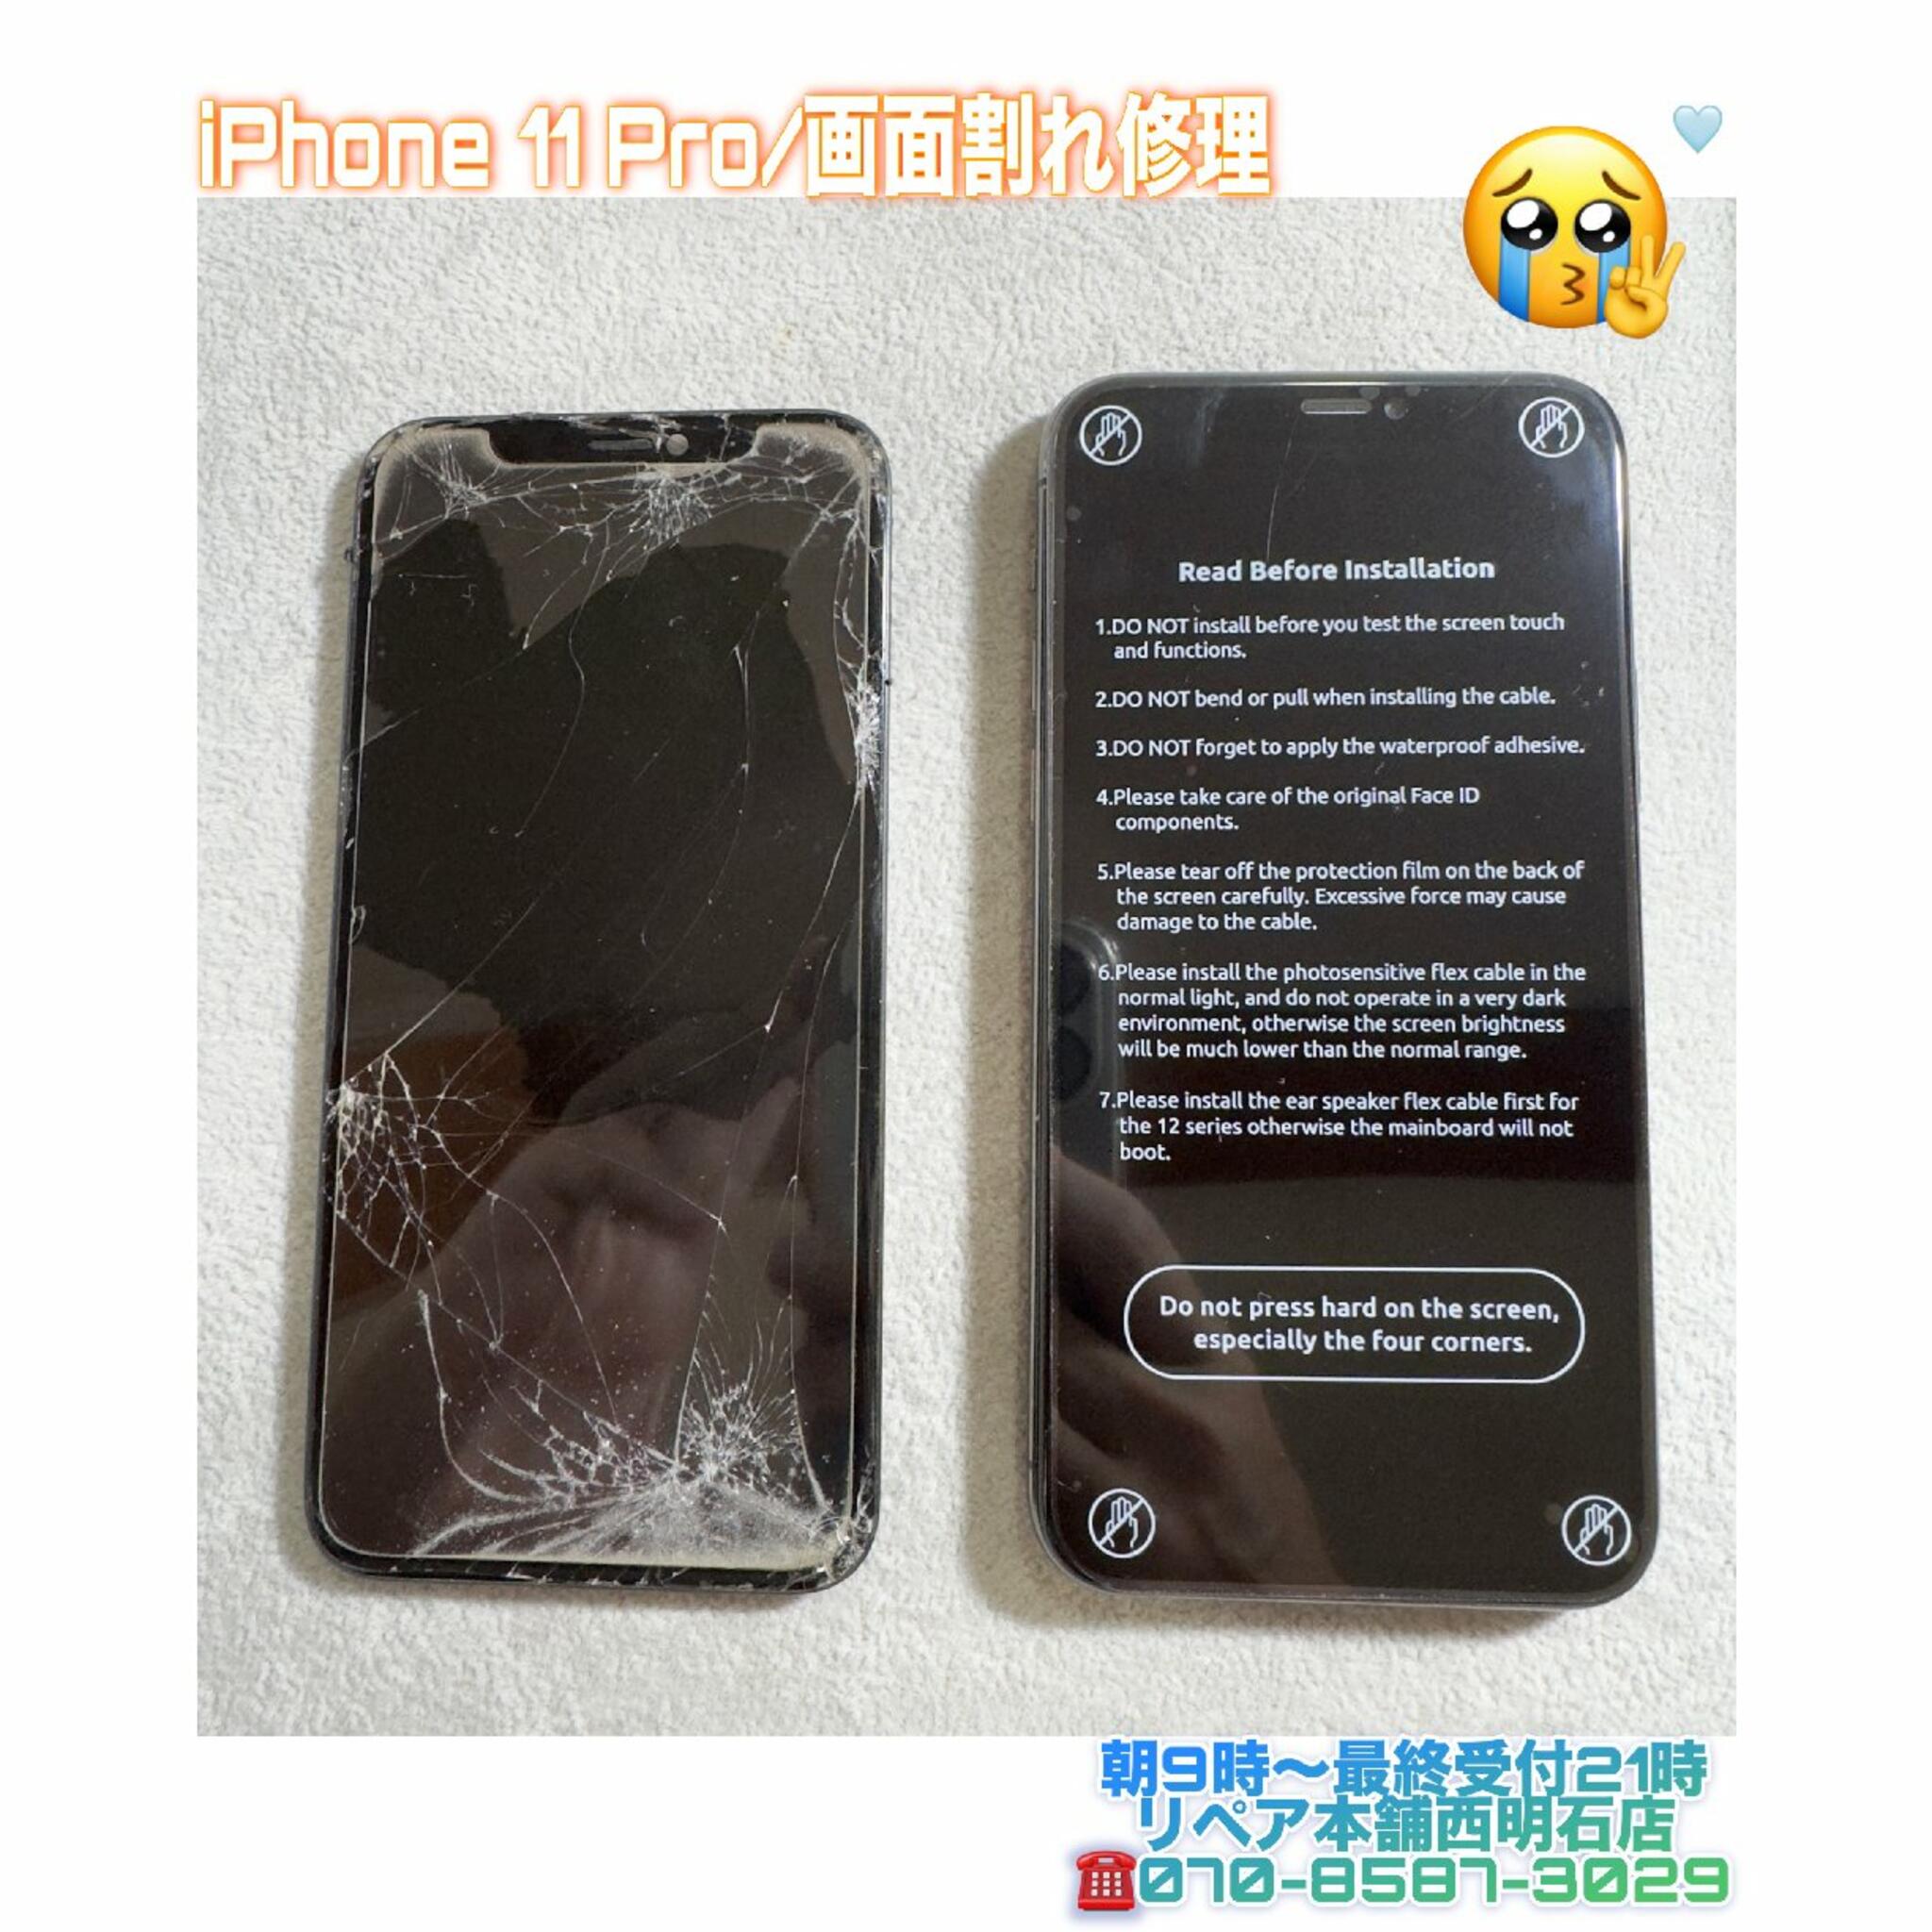 iPhone修理 明石 リペア本舗 西明石店からのお知らせ(💡神戸市西区の方より、iPhone 11 Pro画面割れ修理のご依頼を頂きました🙂)に関する写真